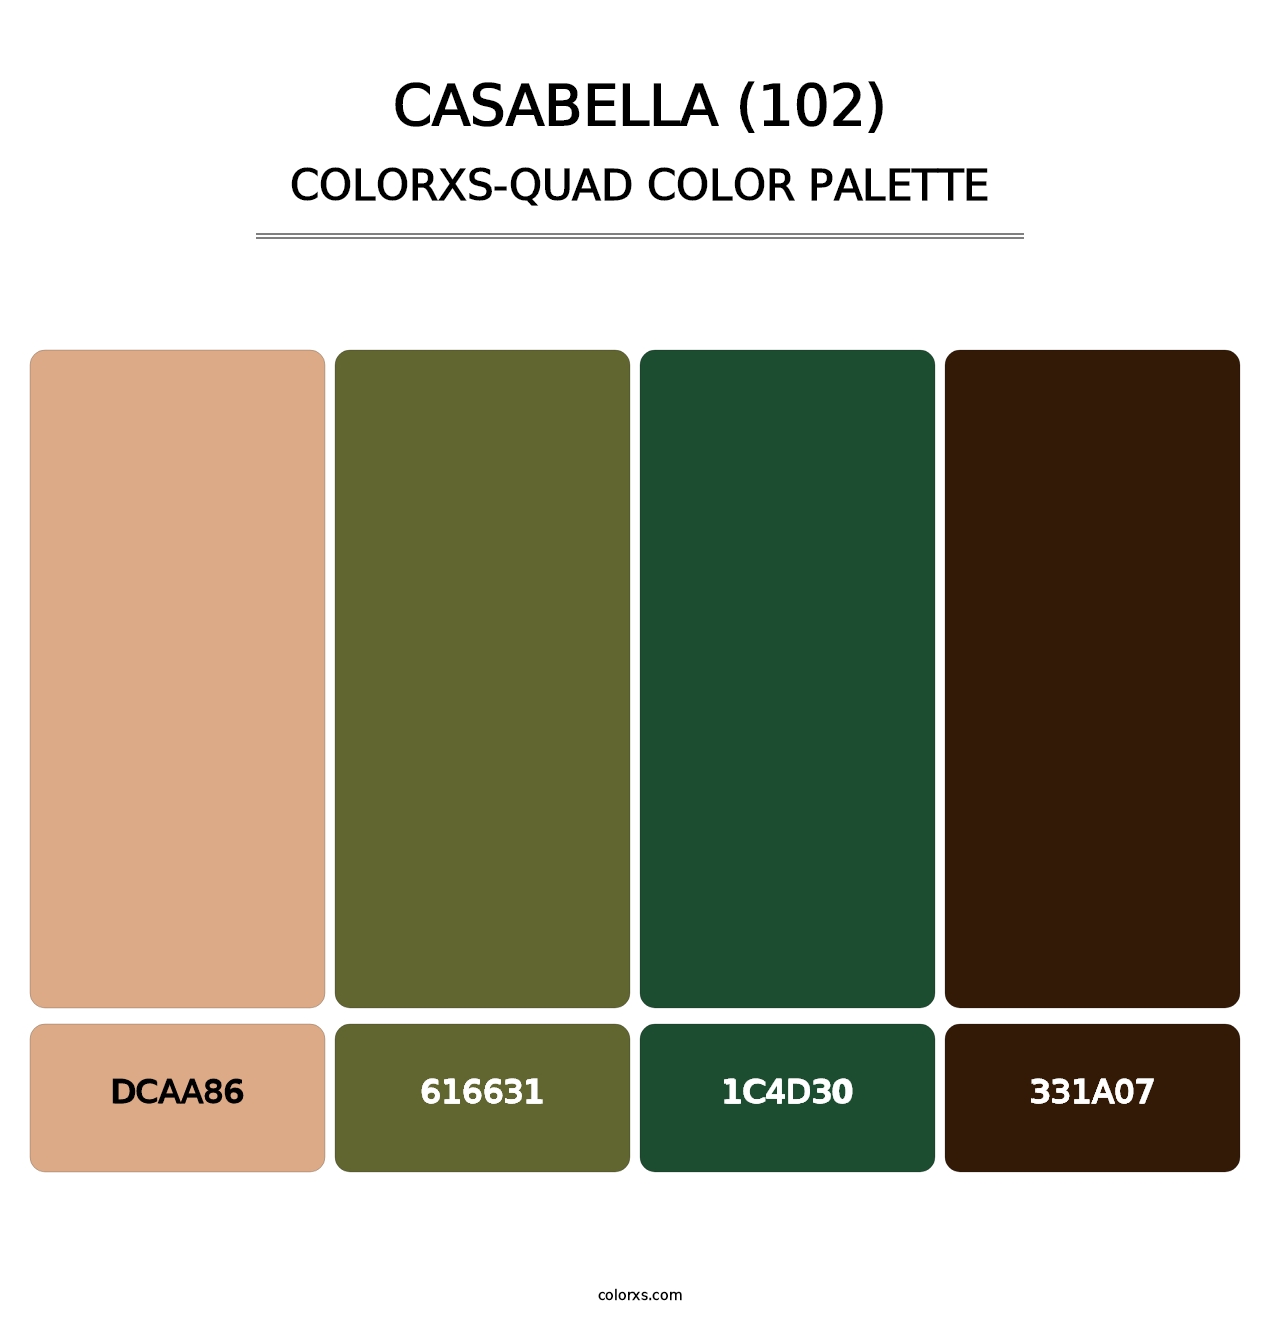 Casabella (102) - Colorxs Quad Palette